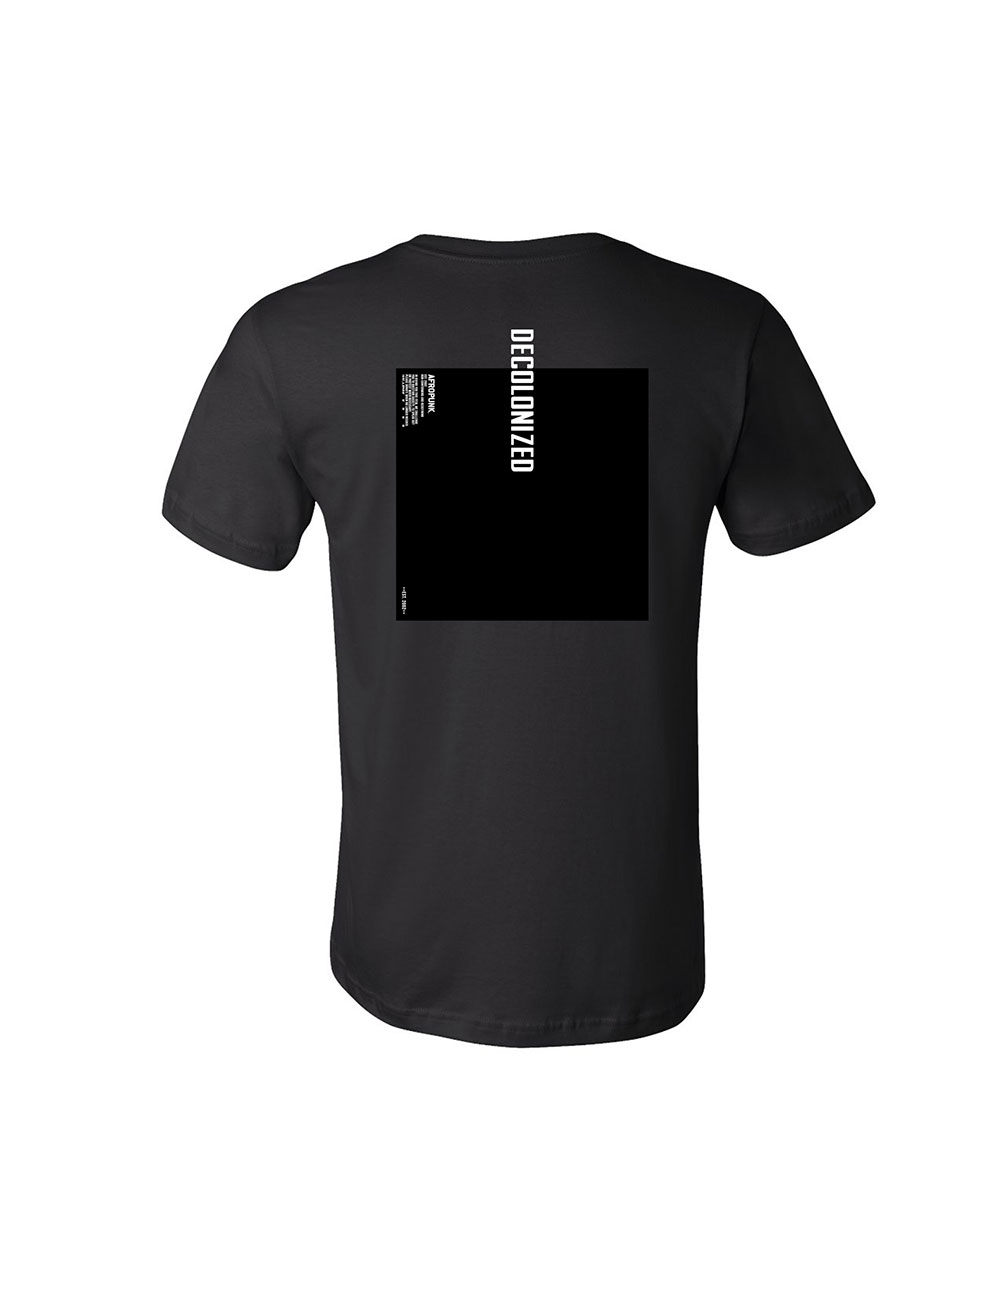 AFROPUNK - Merch - Decolonized T-Shirt